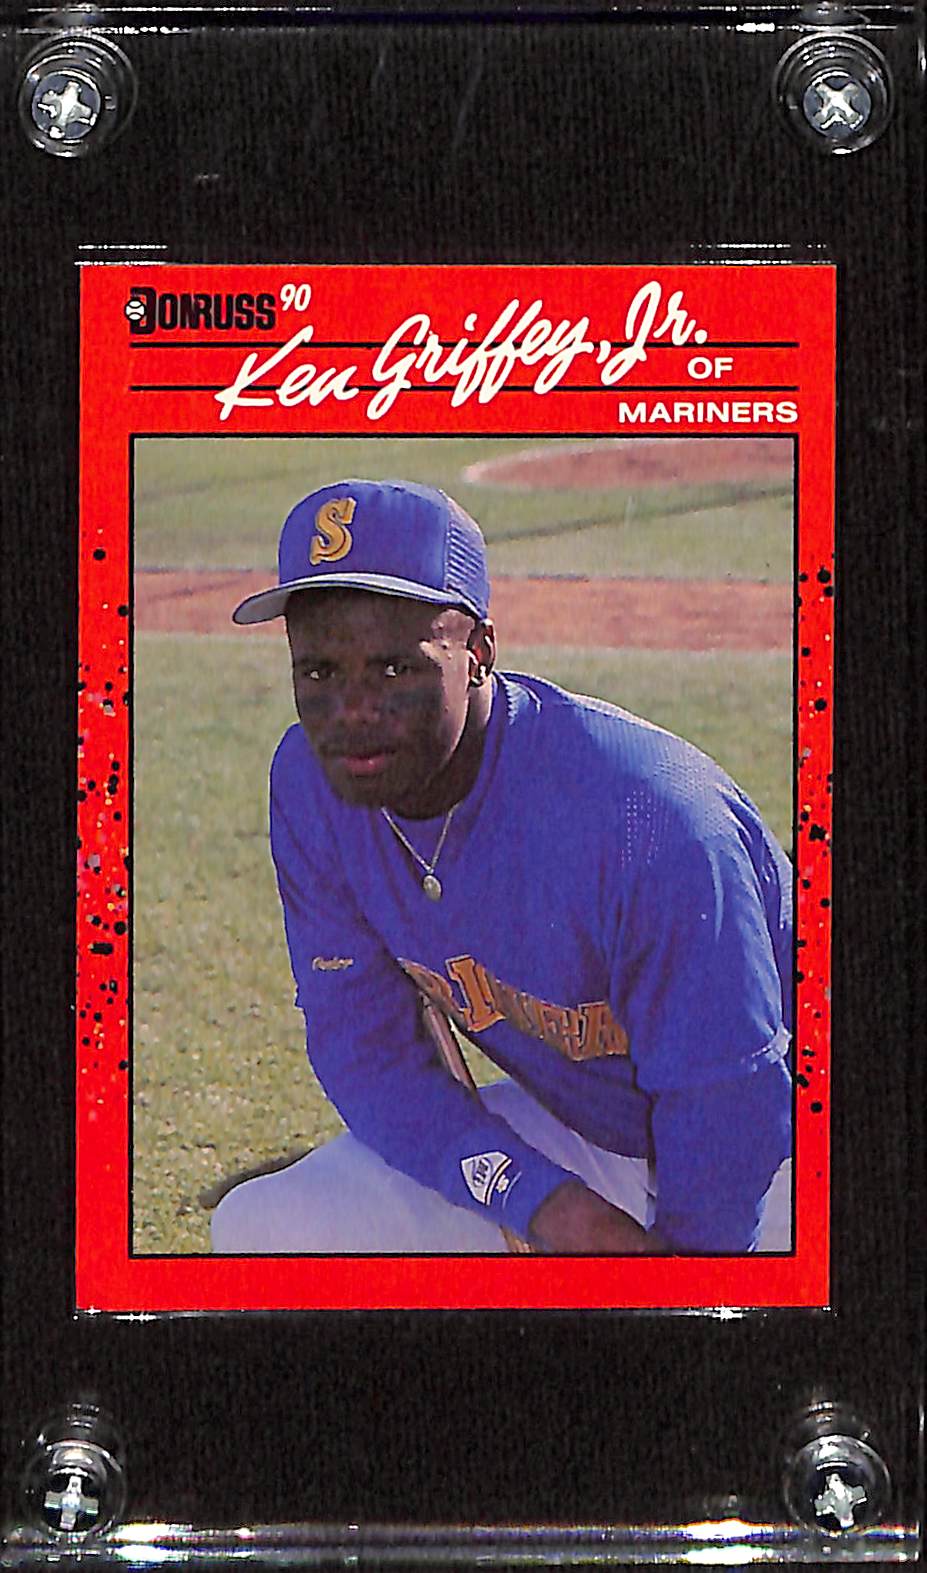 FIINR Baseball Card 1990 Donruss Ken Griffey Jr. Baseball Error Card #61 - Error Card - Mint Condition